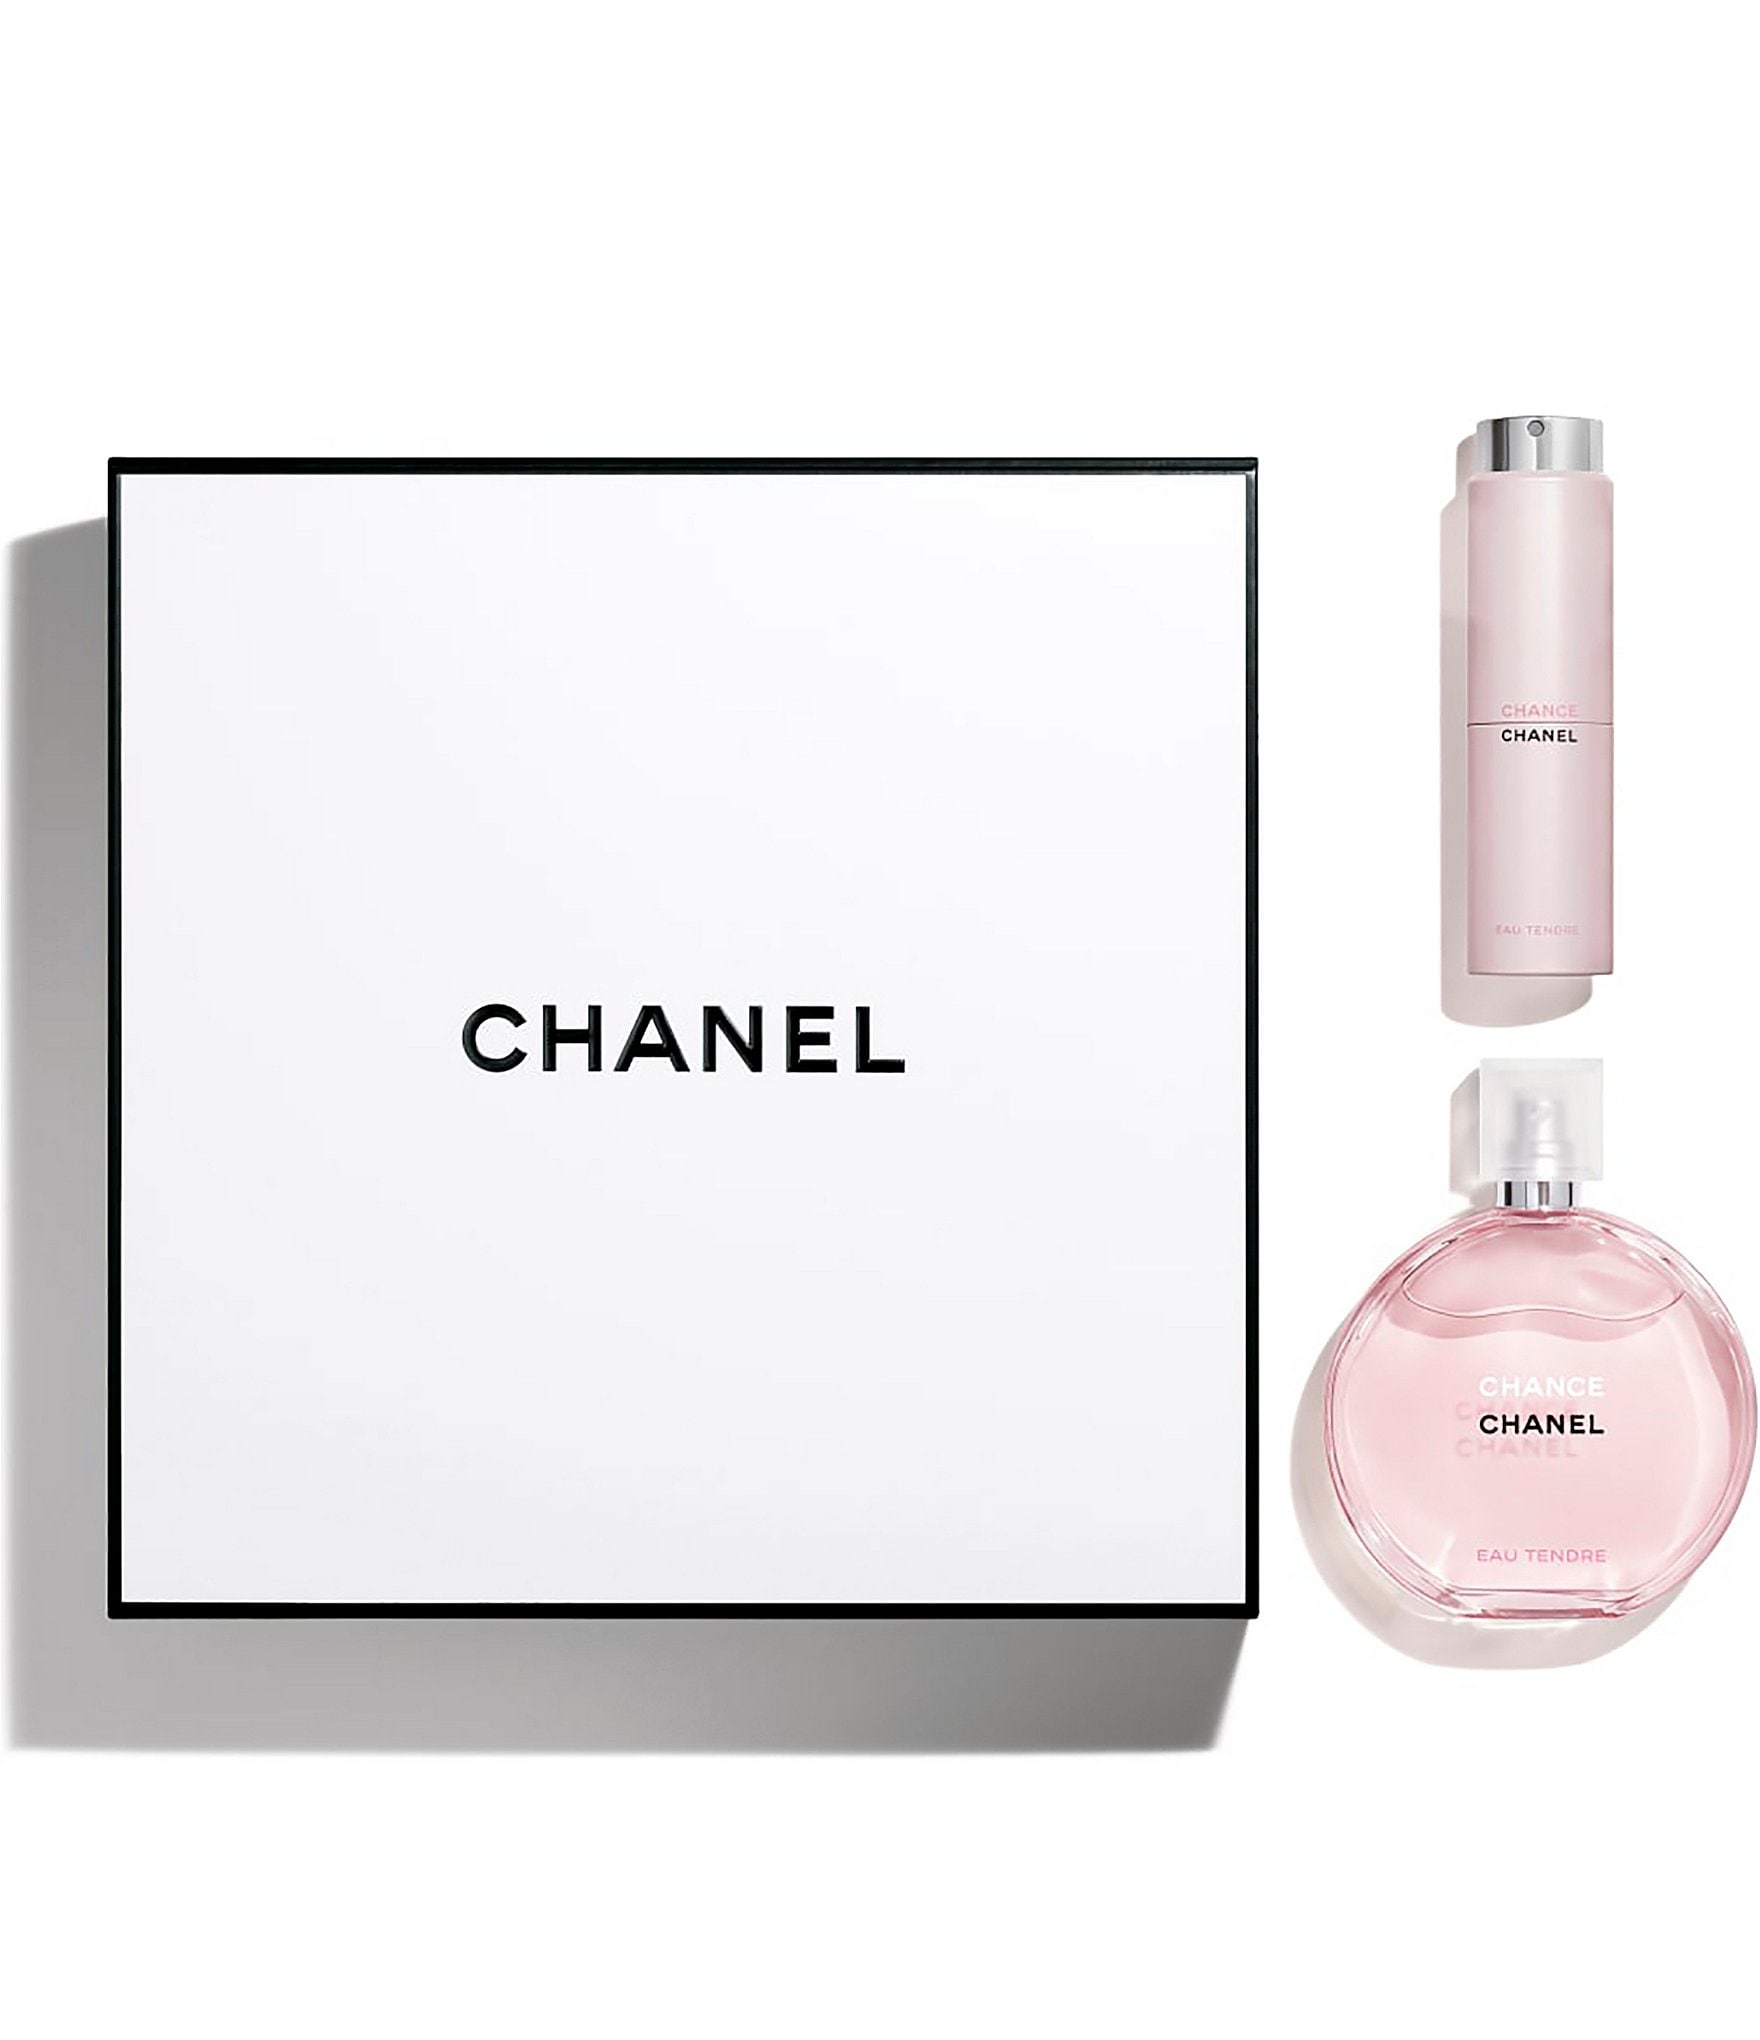 Chanel Chance Eau Tendre Eau De Parfum | lupon.gov.ph